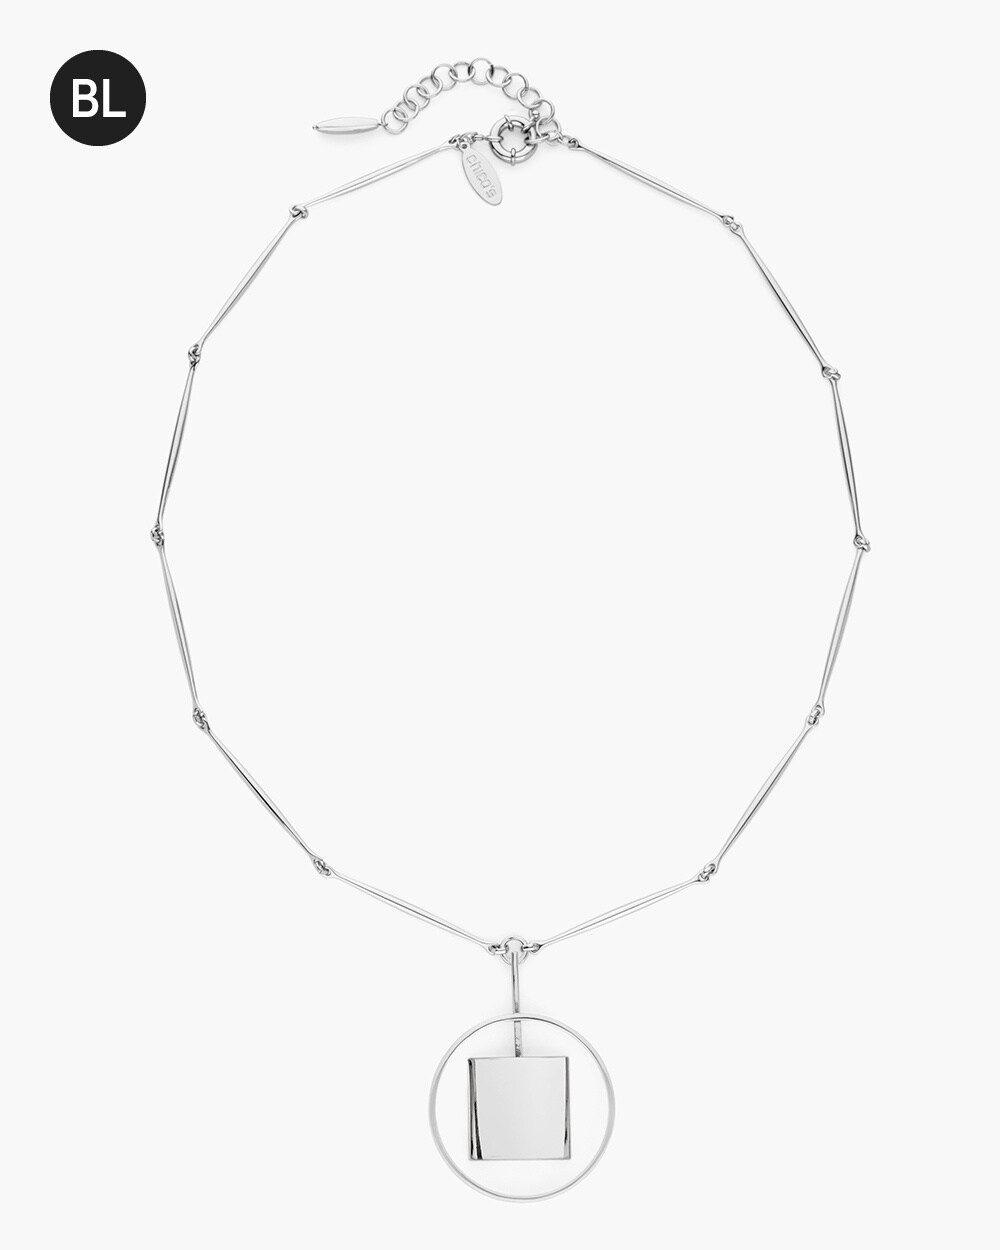 Black Label Silver-Tone Long Pendant Necklace